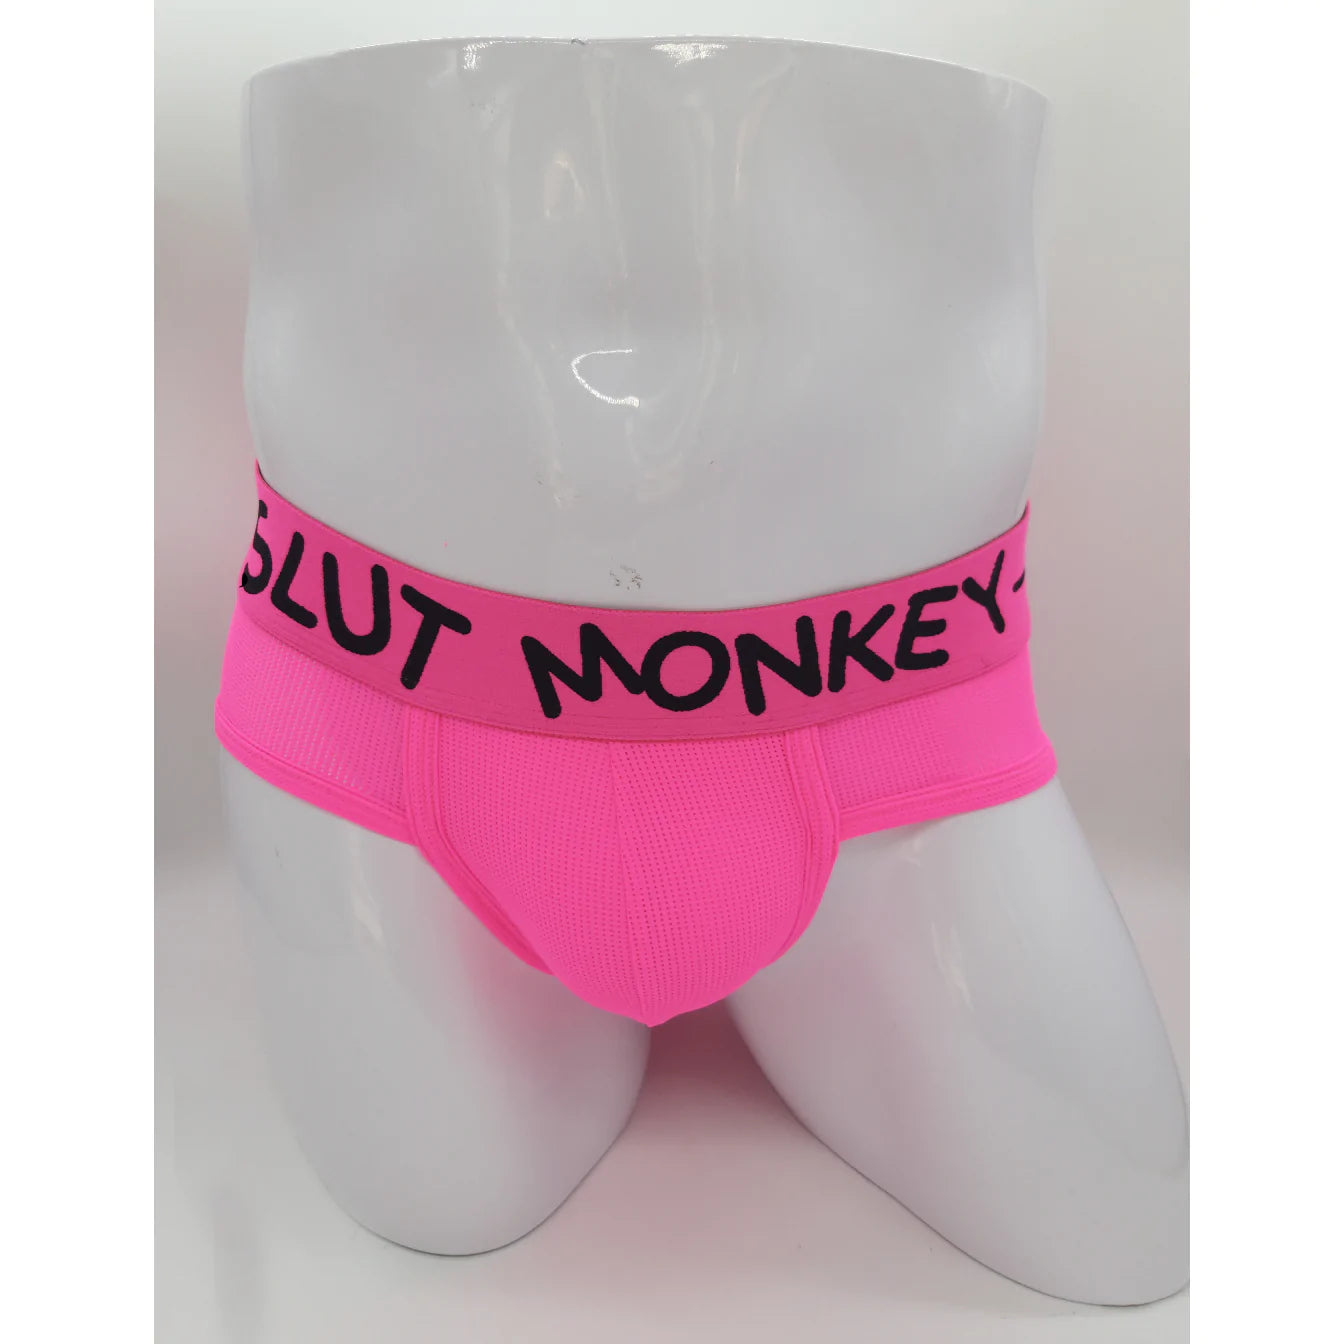 Slut Monkey Neon Briefs – Skivvies